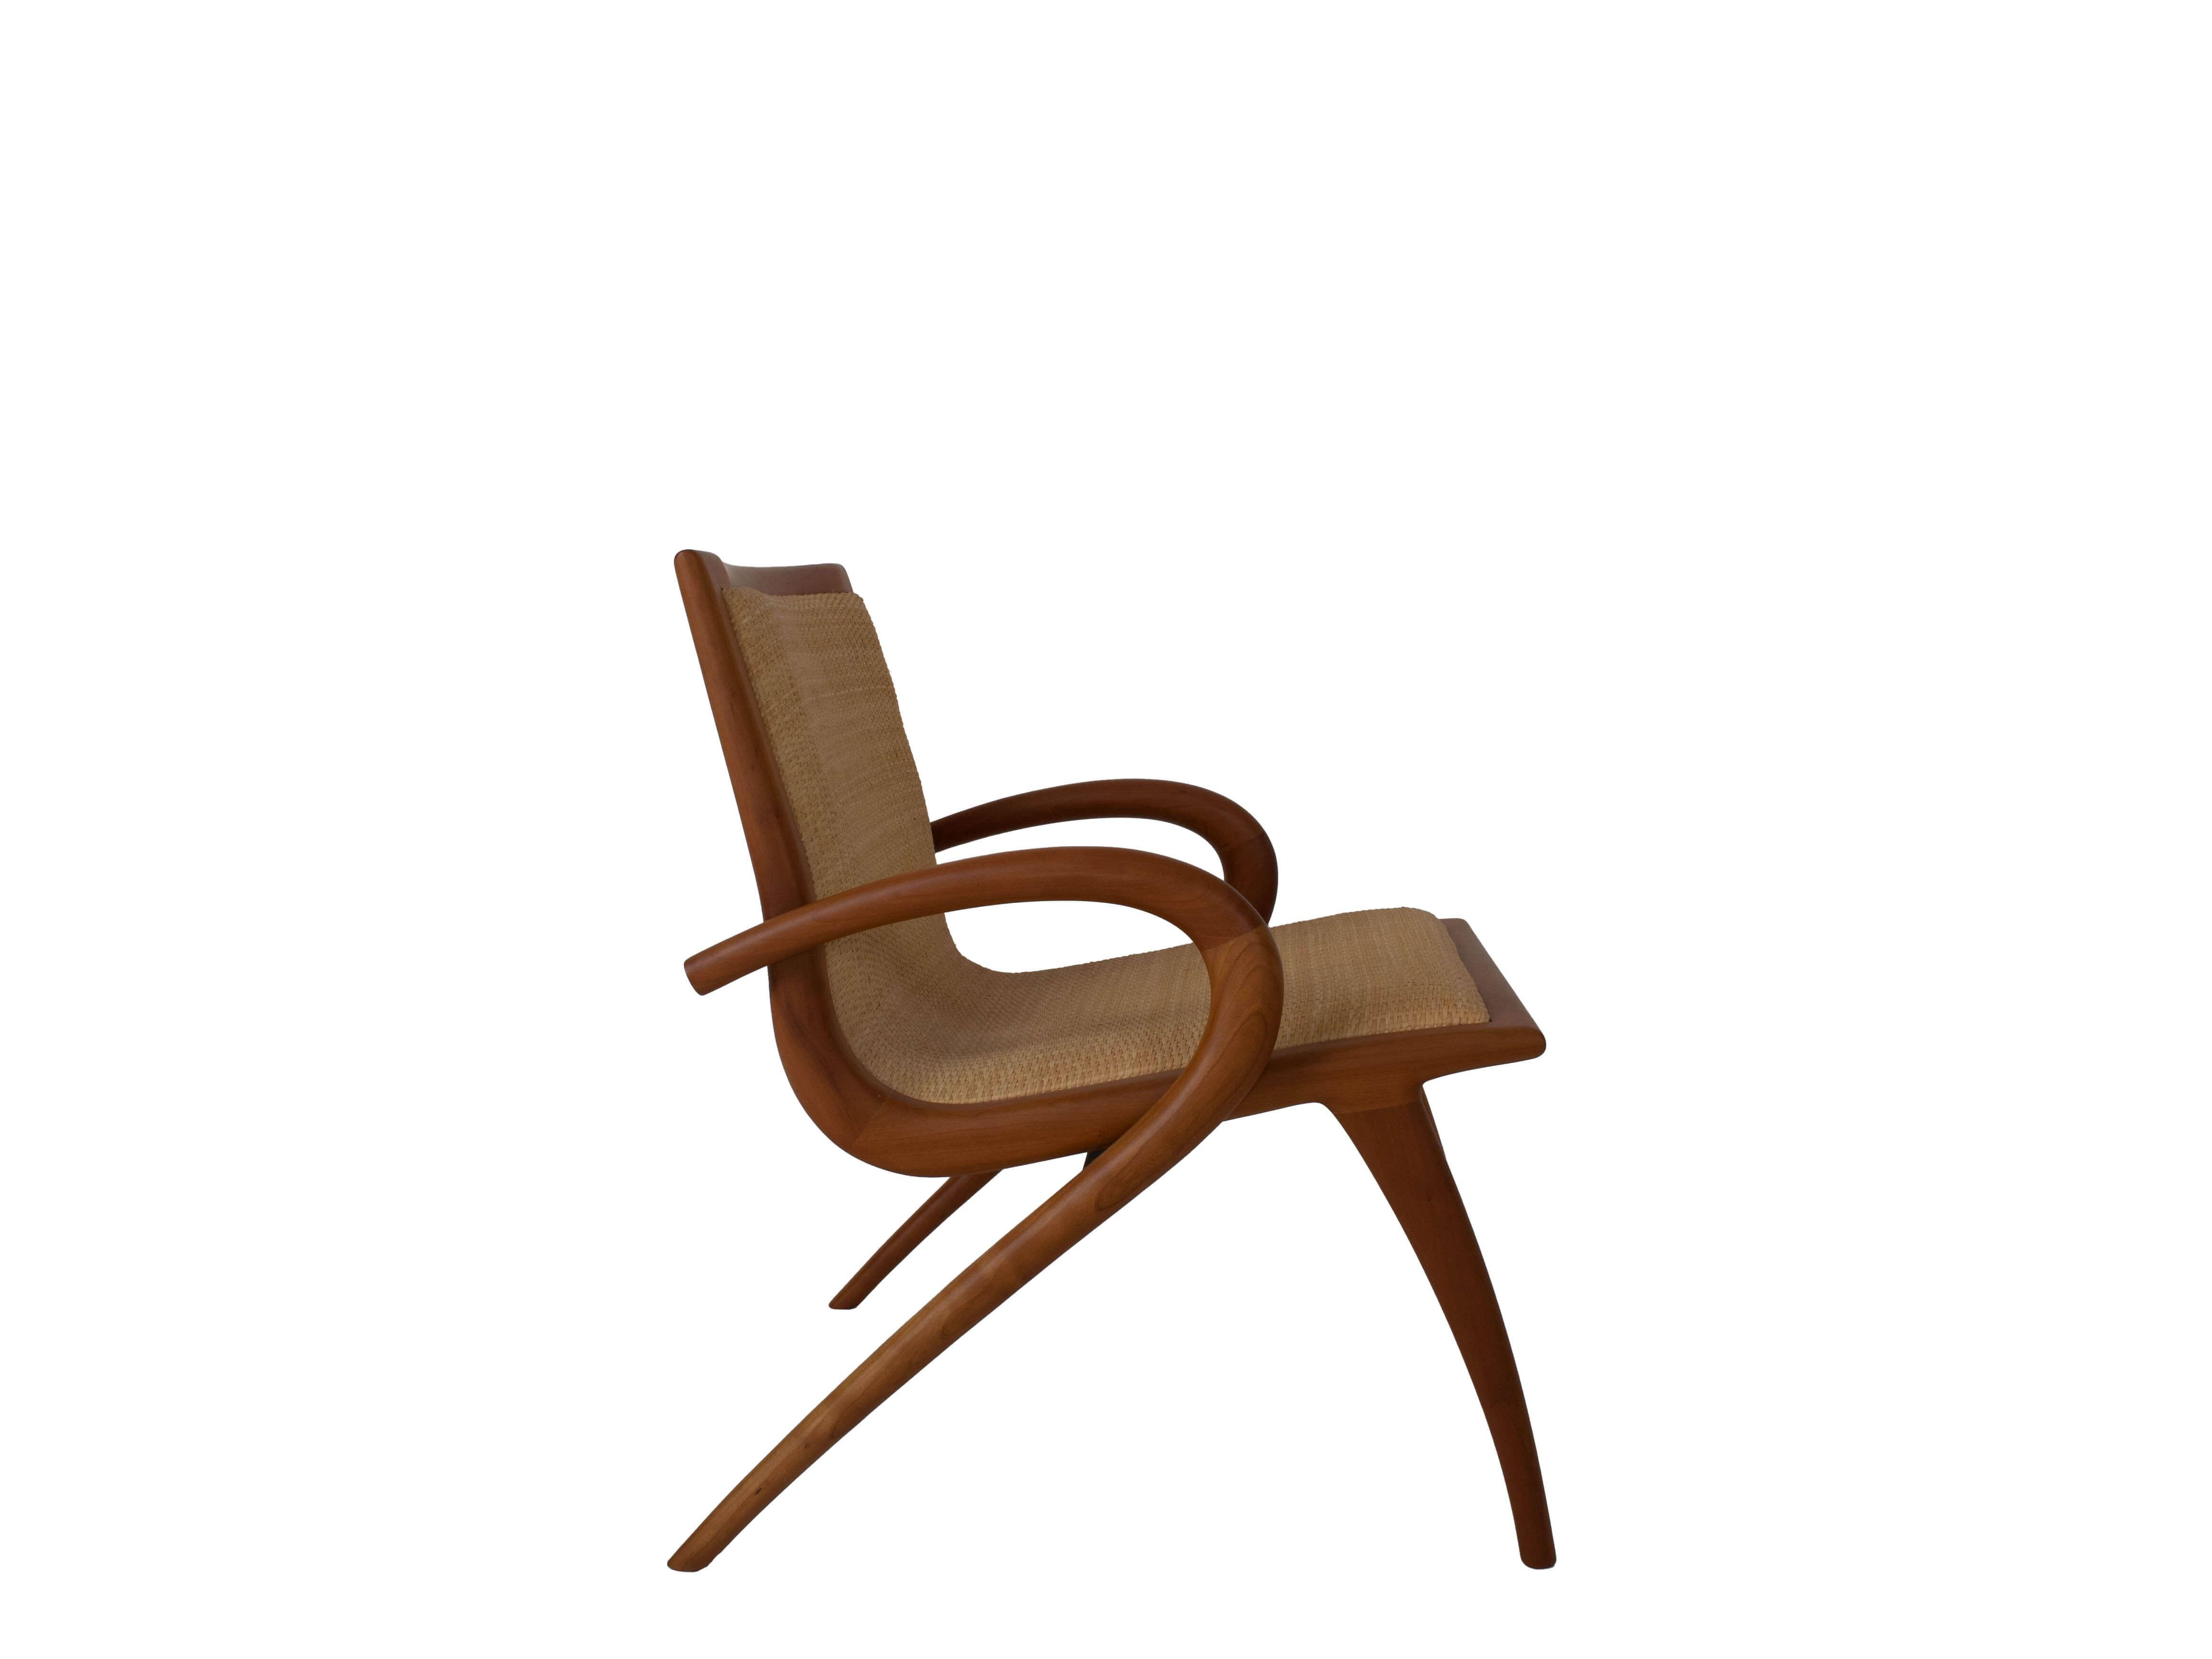 Wicker Set of Two Arm Chairs by John Graz, Designed in Brazil 1950s